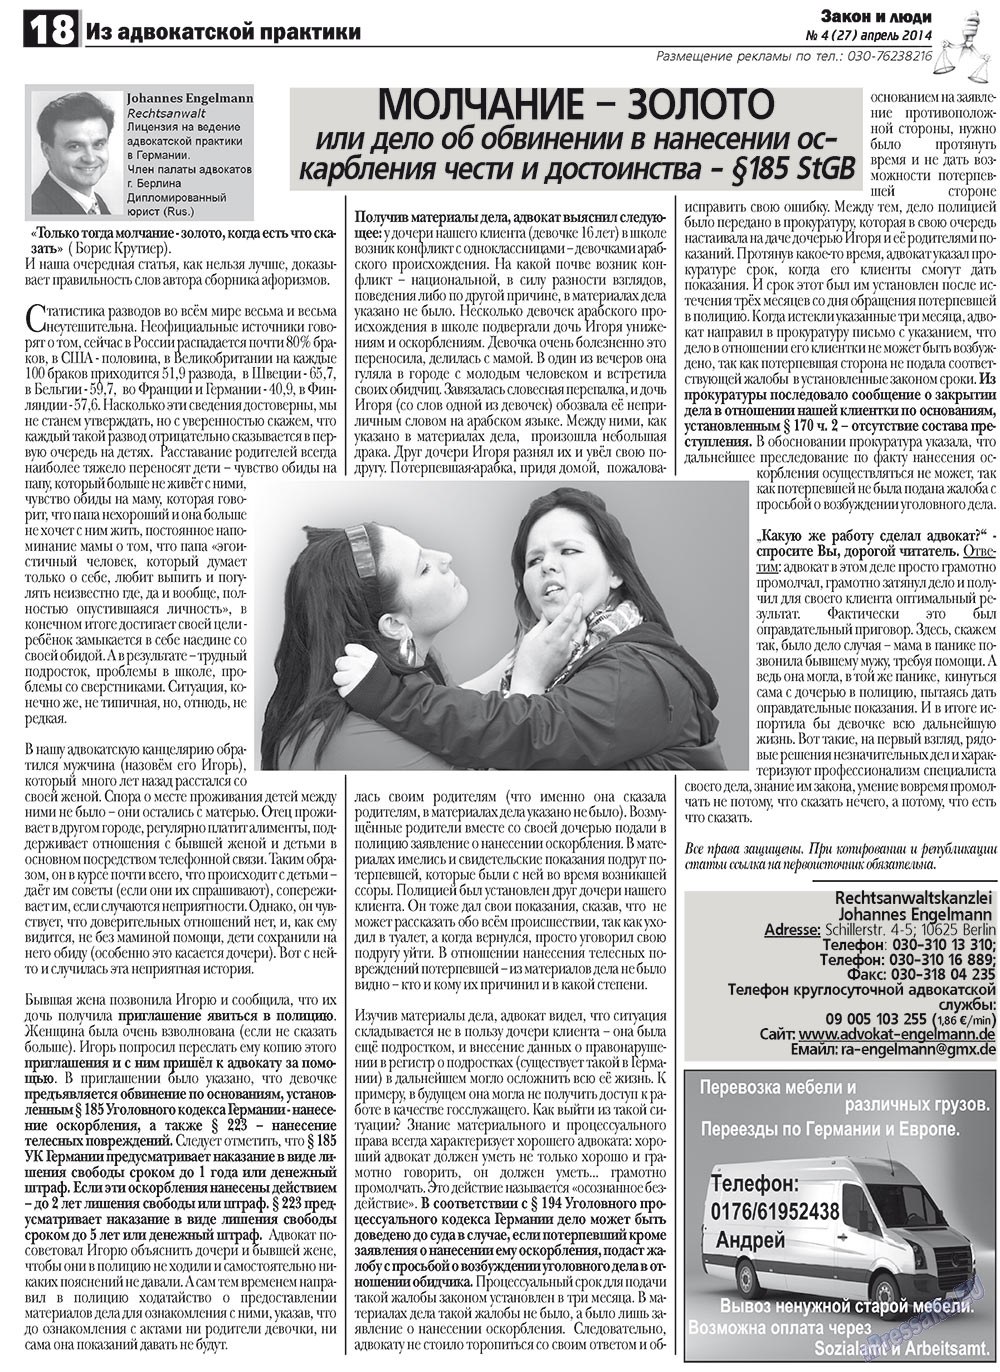 Закон и люди, газета. 2012 №4 стр.18